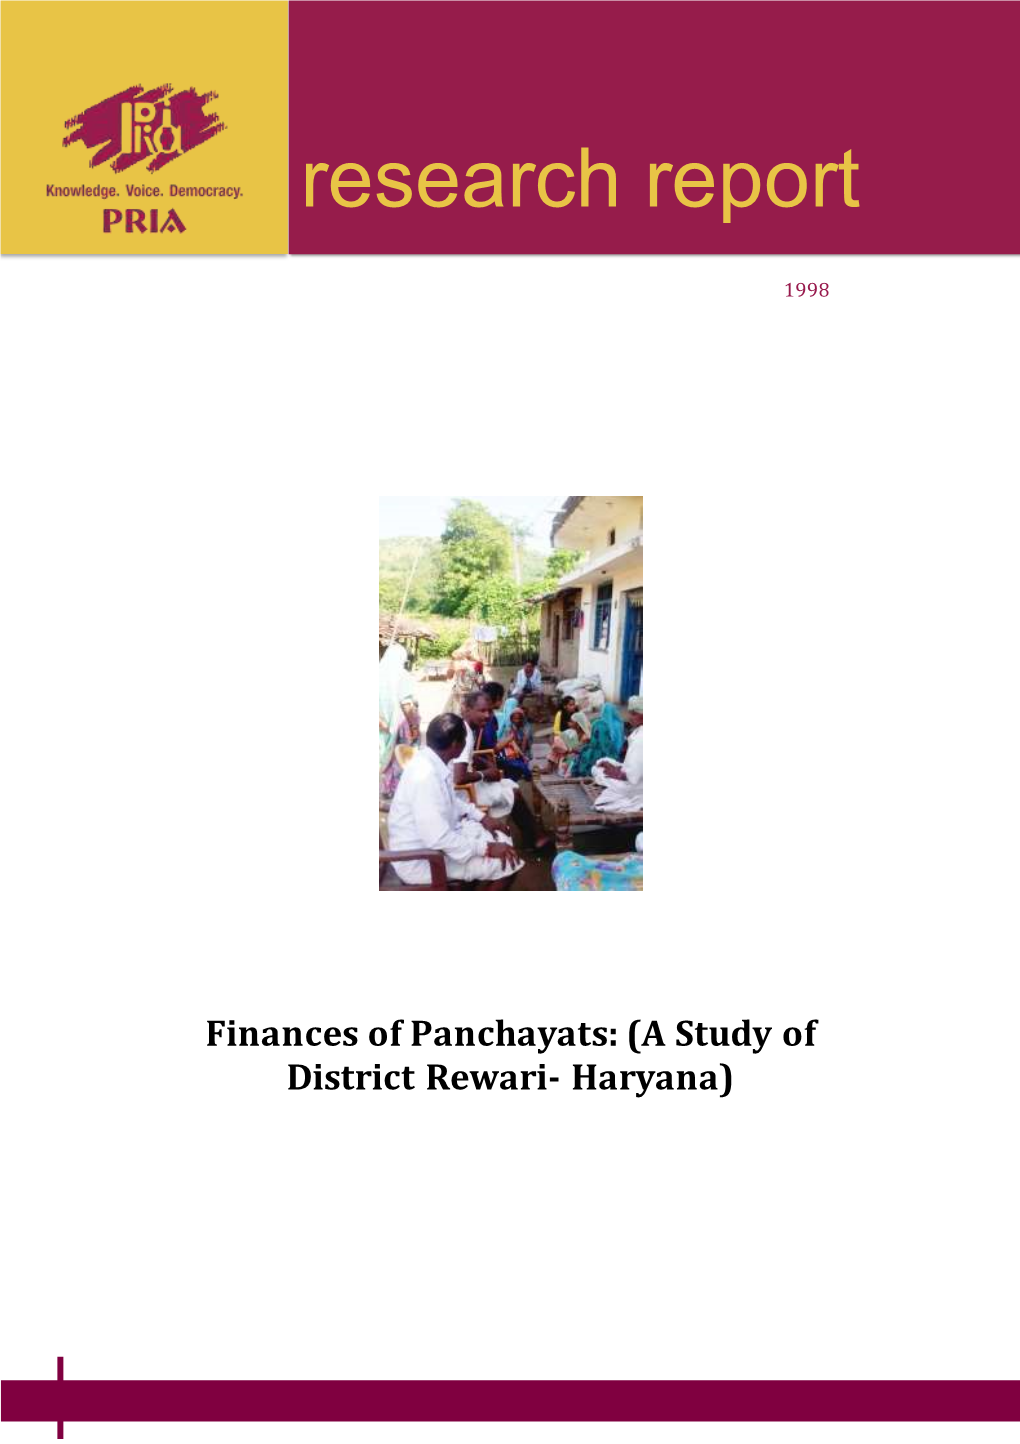 Finances of Panchayats- (A Study of District Rewari- Haryana)